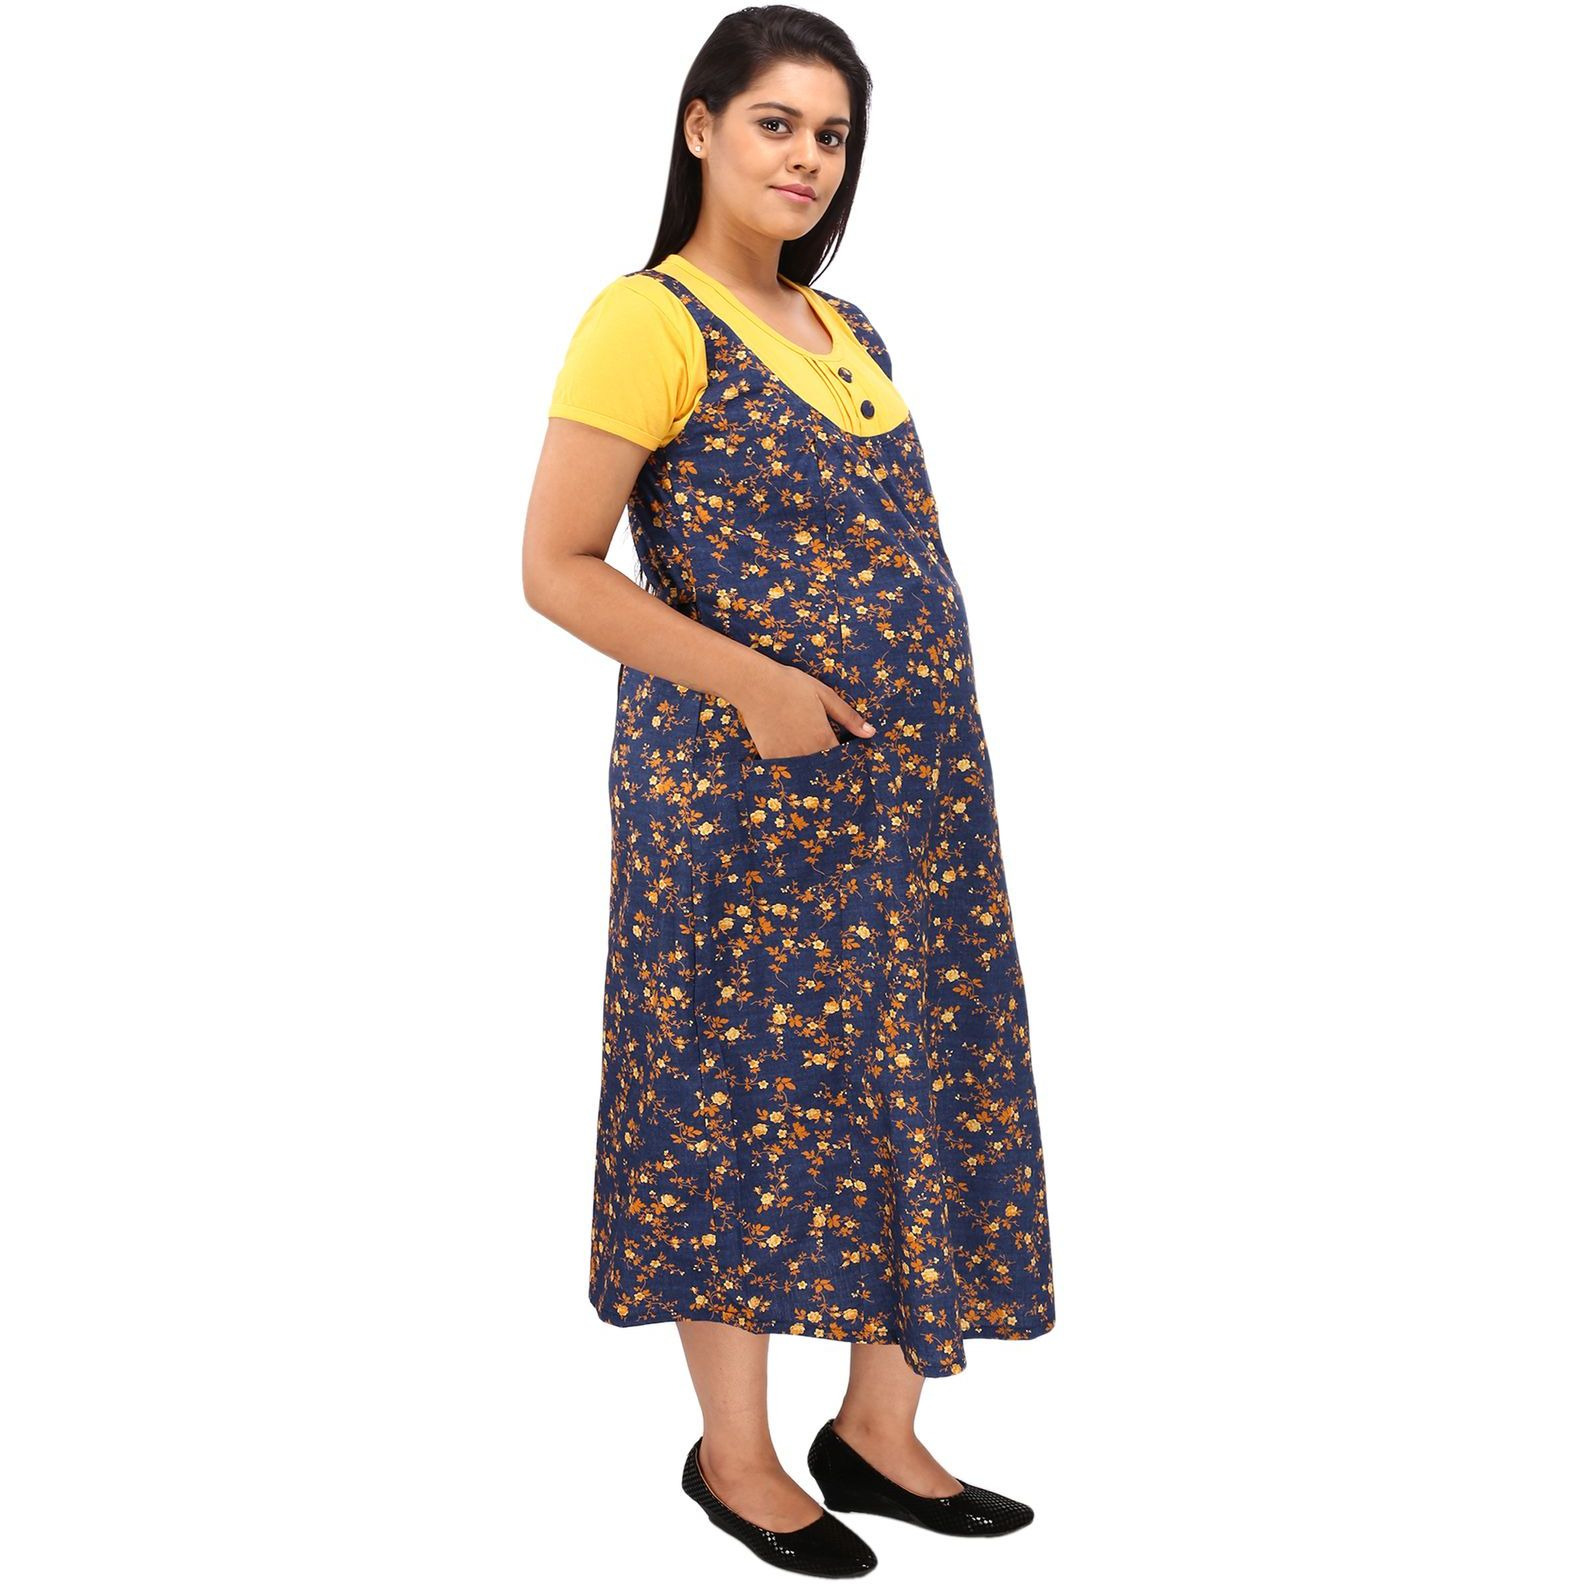 Mamma's Maternity Women's Cotton Yellow and Blue Maternity Dress (Size:M)